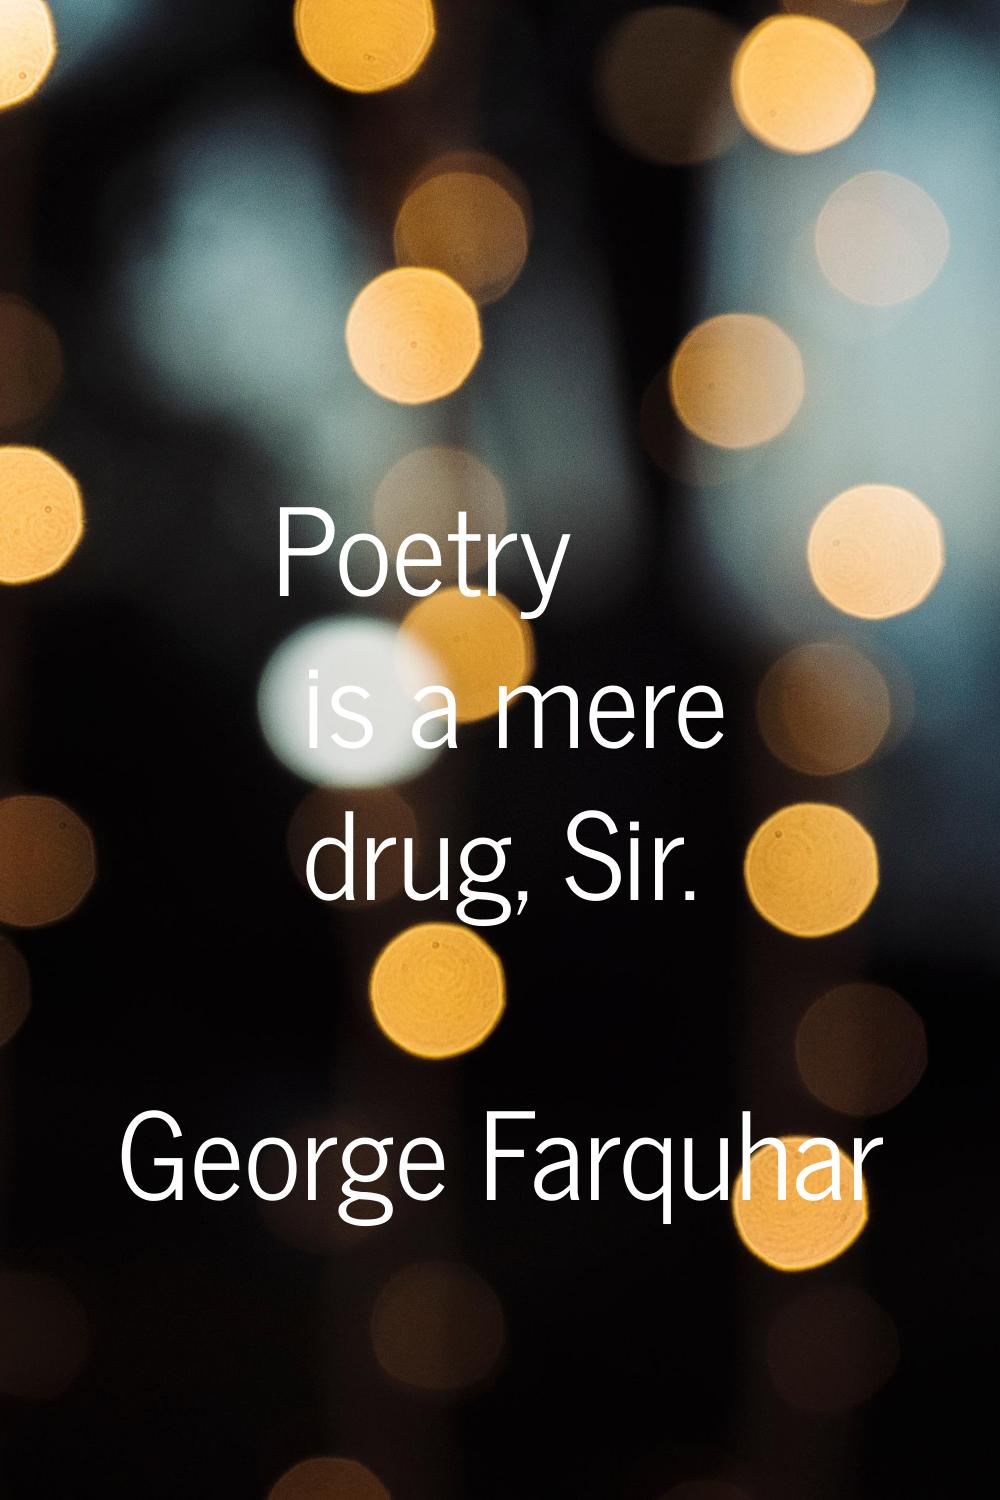 Poetry is a mere drug, Sir.